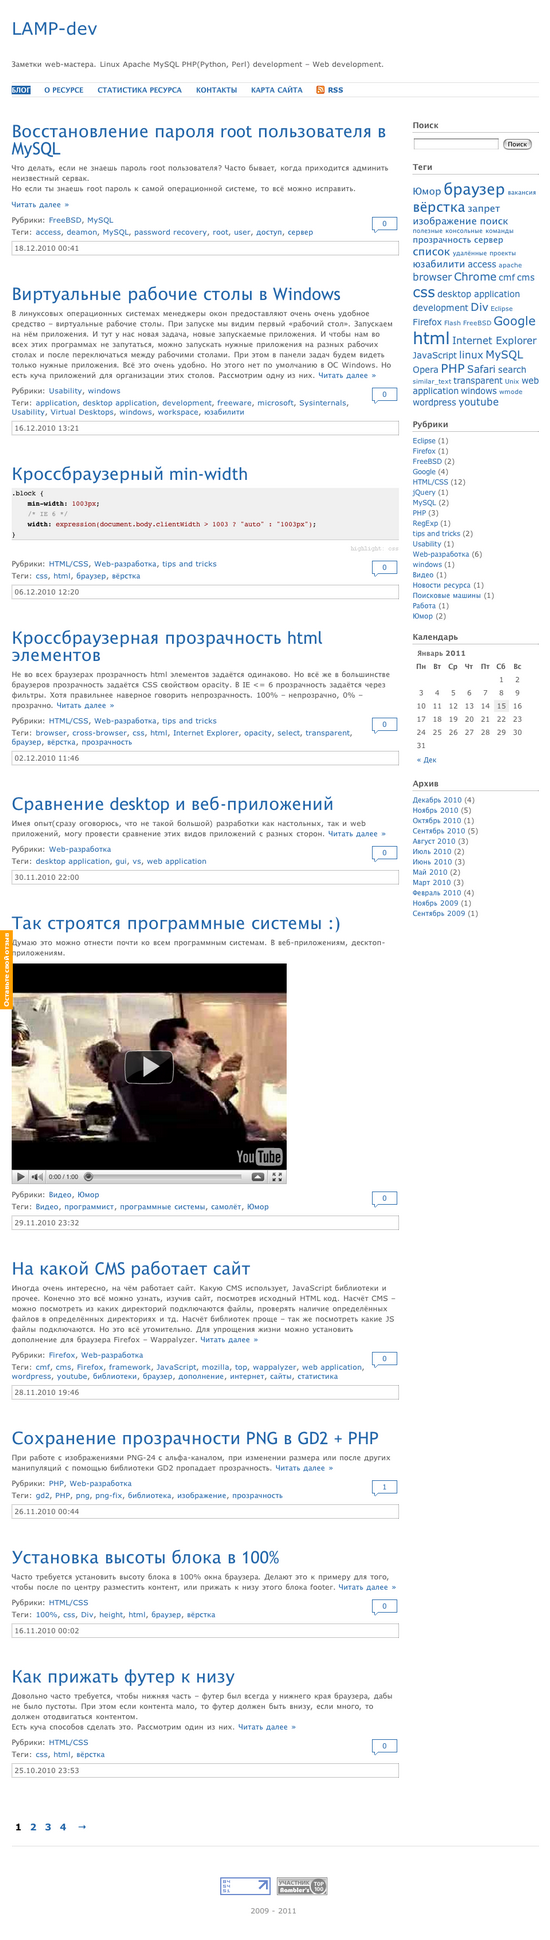 Скриншот главной страницы сайта LAMP-dev.ru